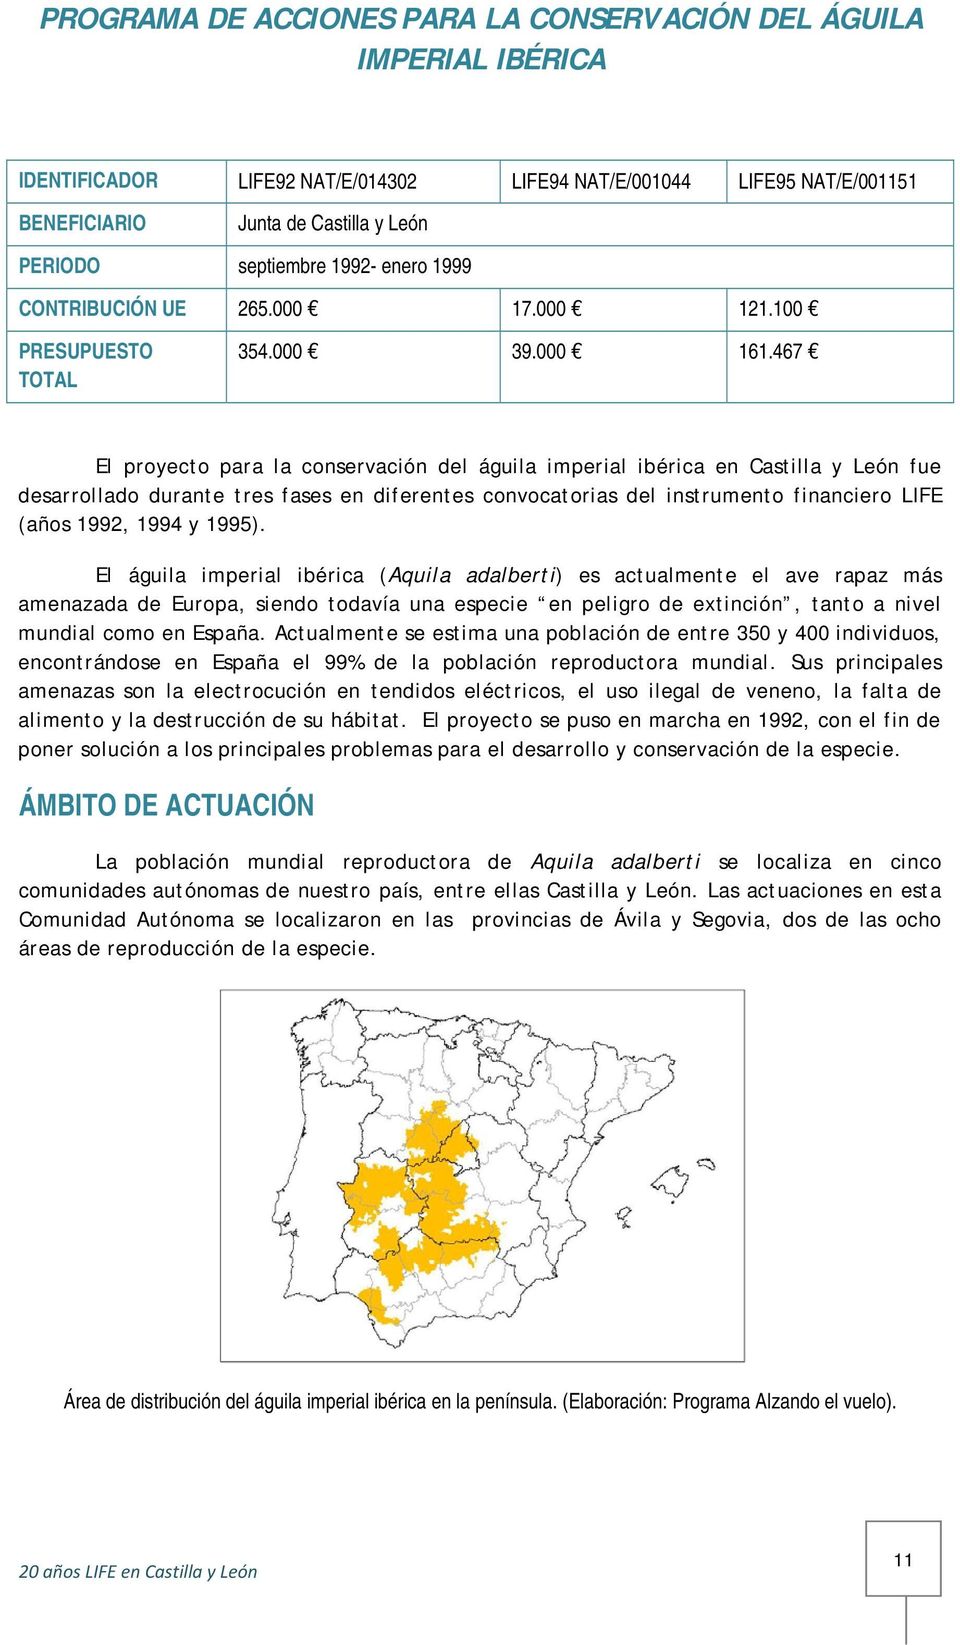 467 El proyecto para la conservación del águila imperial ibérica en Castilla y León fue desarrollado durante tres fases en diferentes convocatorias del instrumento financiero LIFE (años 1992, 1994 y